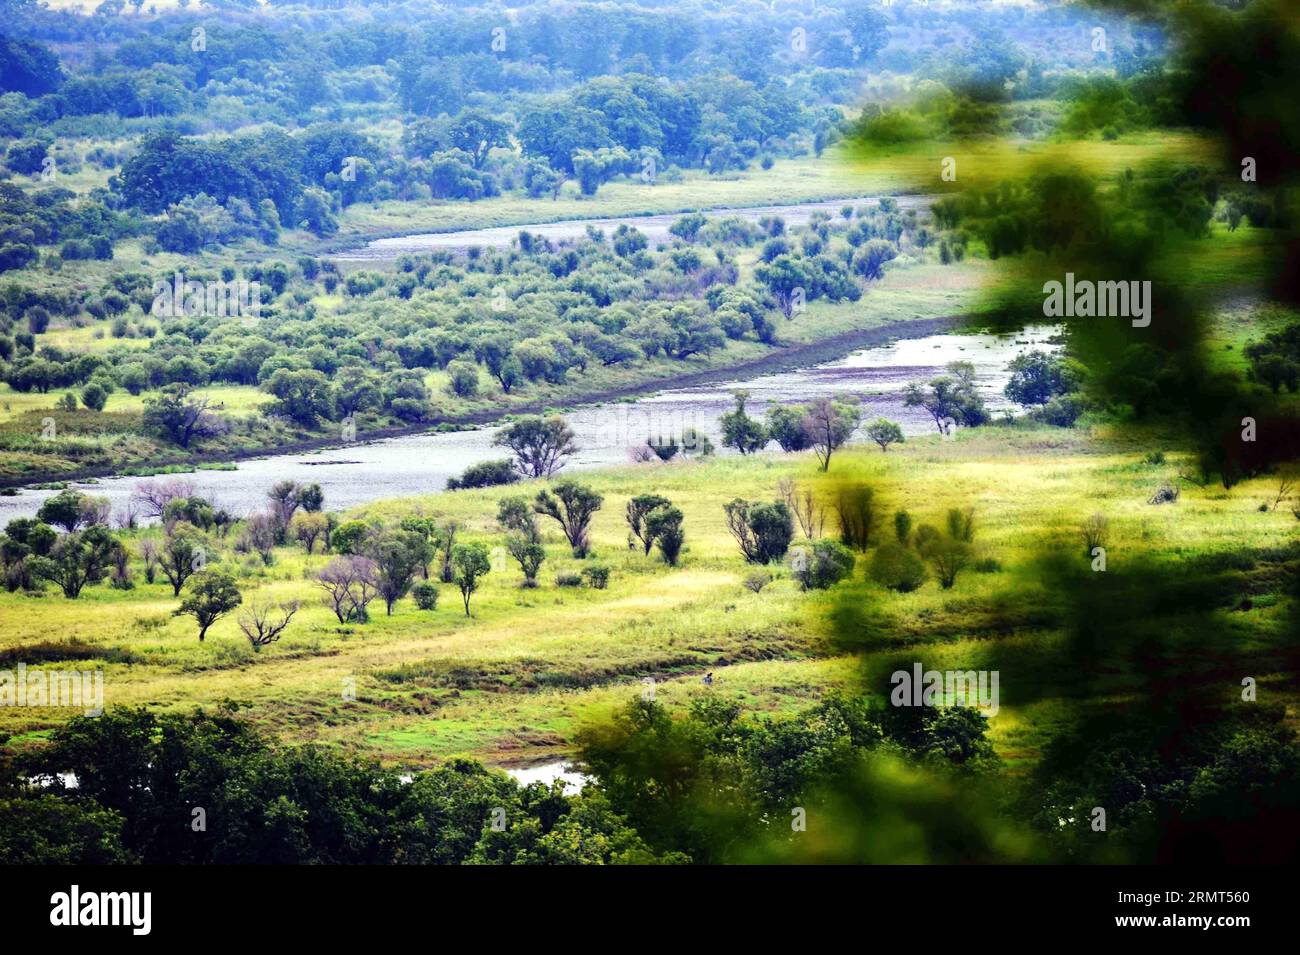 HULIN, 15 agosto 2014 -- foto scattata il 15 agosto 2014 mostra il paesaggio della zona umida sull'isola di Zhenbao a Hulin, nella provincia di Heilongjiang nella Cina nordorientale. L'isola di Zhenbao, che significa tesoro raro in cinese, ha una superficie umida di 29.275 ettari. La zona umida qui è stata designata come zona umida di importanza internazionale dalla Convenzione di Ramsar del 2011 ottobre per la sua importanza vitale come zona umida unica per la diversità biologica. (lfj) CHINA-HEILONGJIANG-HULIN-ZHENBAO ISLAND (CN) WangxJianwei PUBLICATIONxNOTxINxCHN 15 agosto 2014 la foto scattata IL 15 agosto 2014 mostra il paesaggio della zona umida SULLA Z Foto Stock